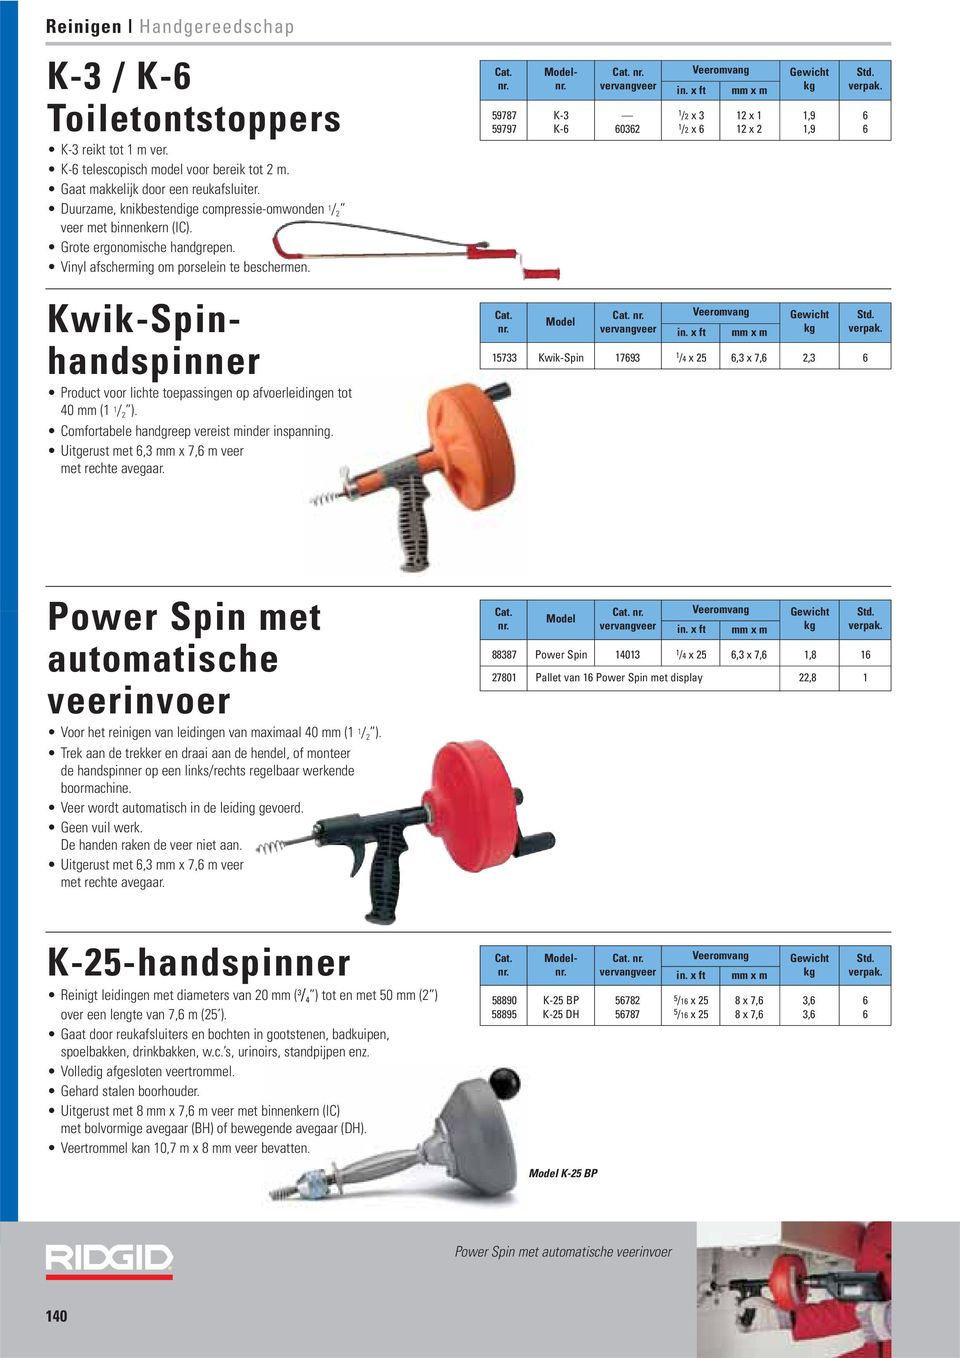 Kwik-Spinhandspinner Product voor lichte toepassingen op afvoerleidingen tot 40 (1 1 / 2 ). Comfortabele handgreep vereist minder inspanning. Uitgerust met 6,3 x 7,6 m veer met rechte avegaar.